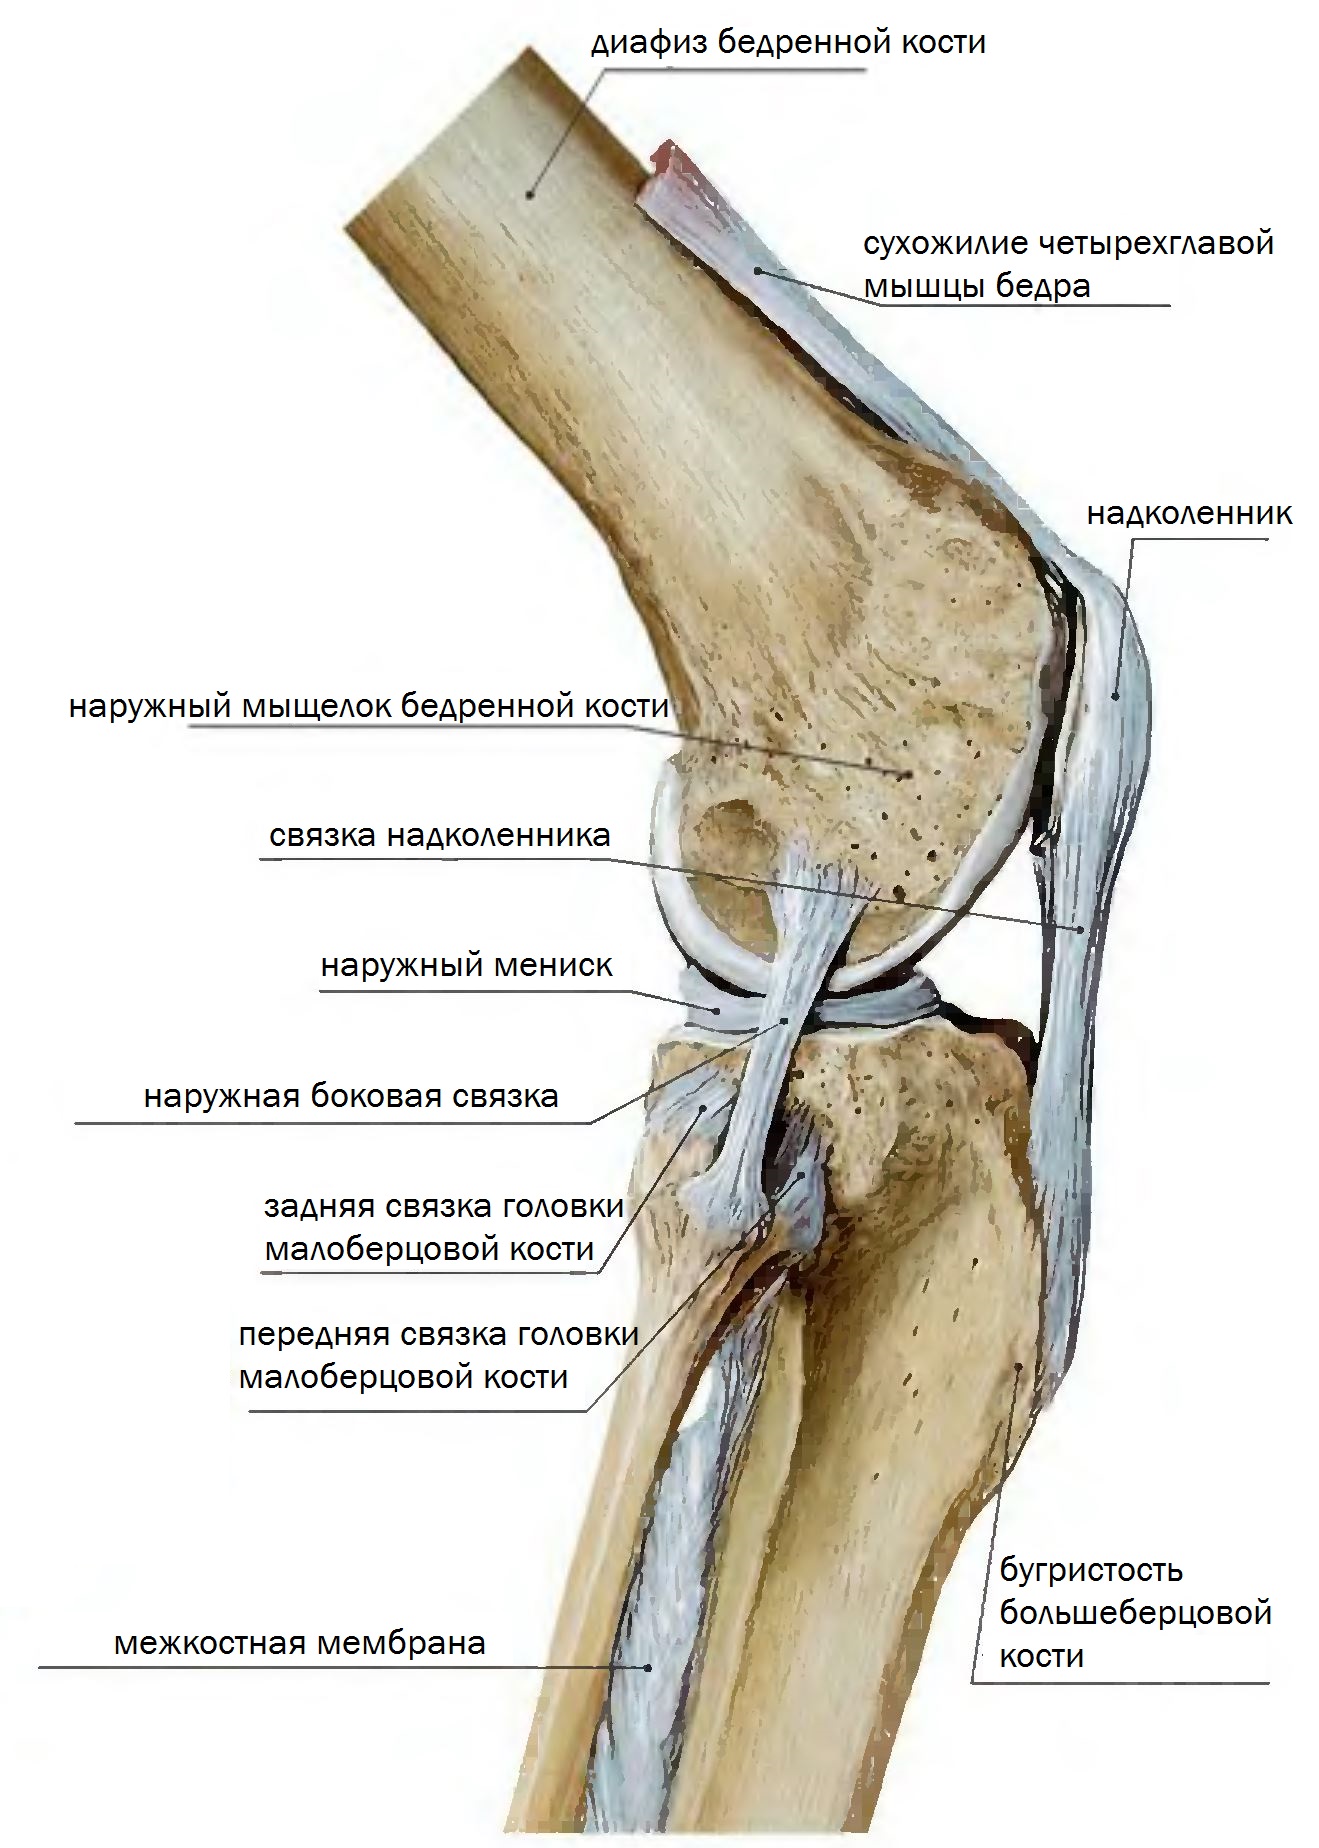 Мыщелок большеберцовой. Мыщелок коленного сустава большеберцовой кости. Коленный сустав анатомия связки надколенника. Коленный сустав малоберцовая кость. Передняя связка головки малоберцовой кости.